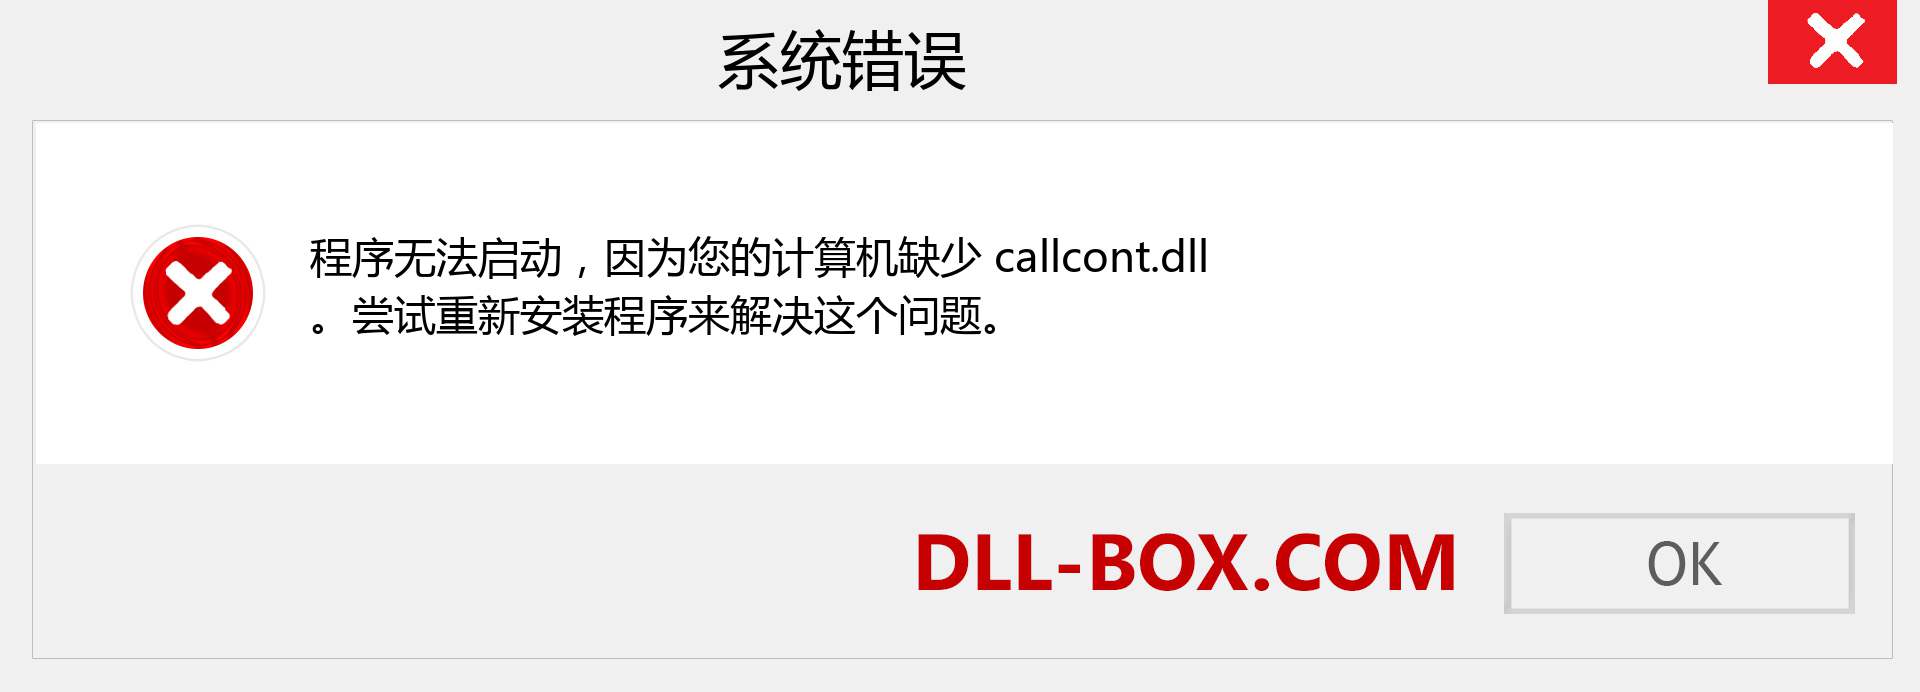 callcont.dll 文件丢失？。 适用于 Windows 7、8、10 的下载 - 修复 Windows、照片、图像上的 callcont dll 丢失错误